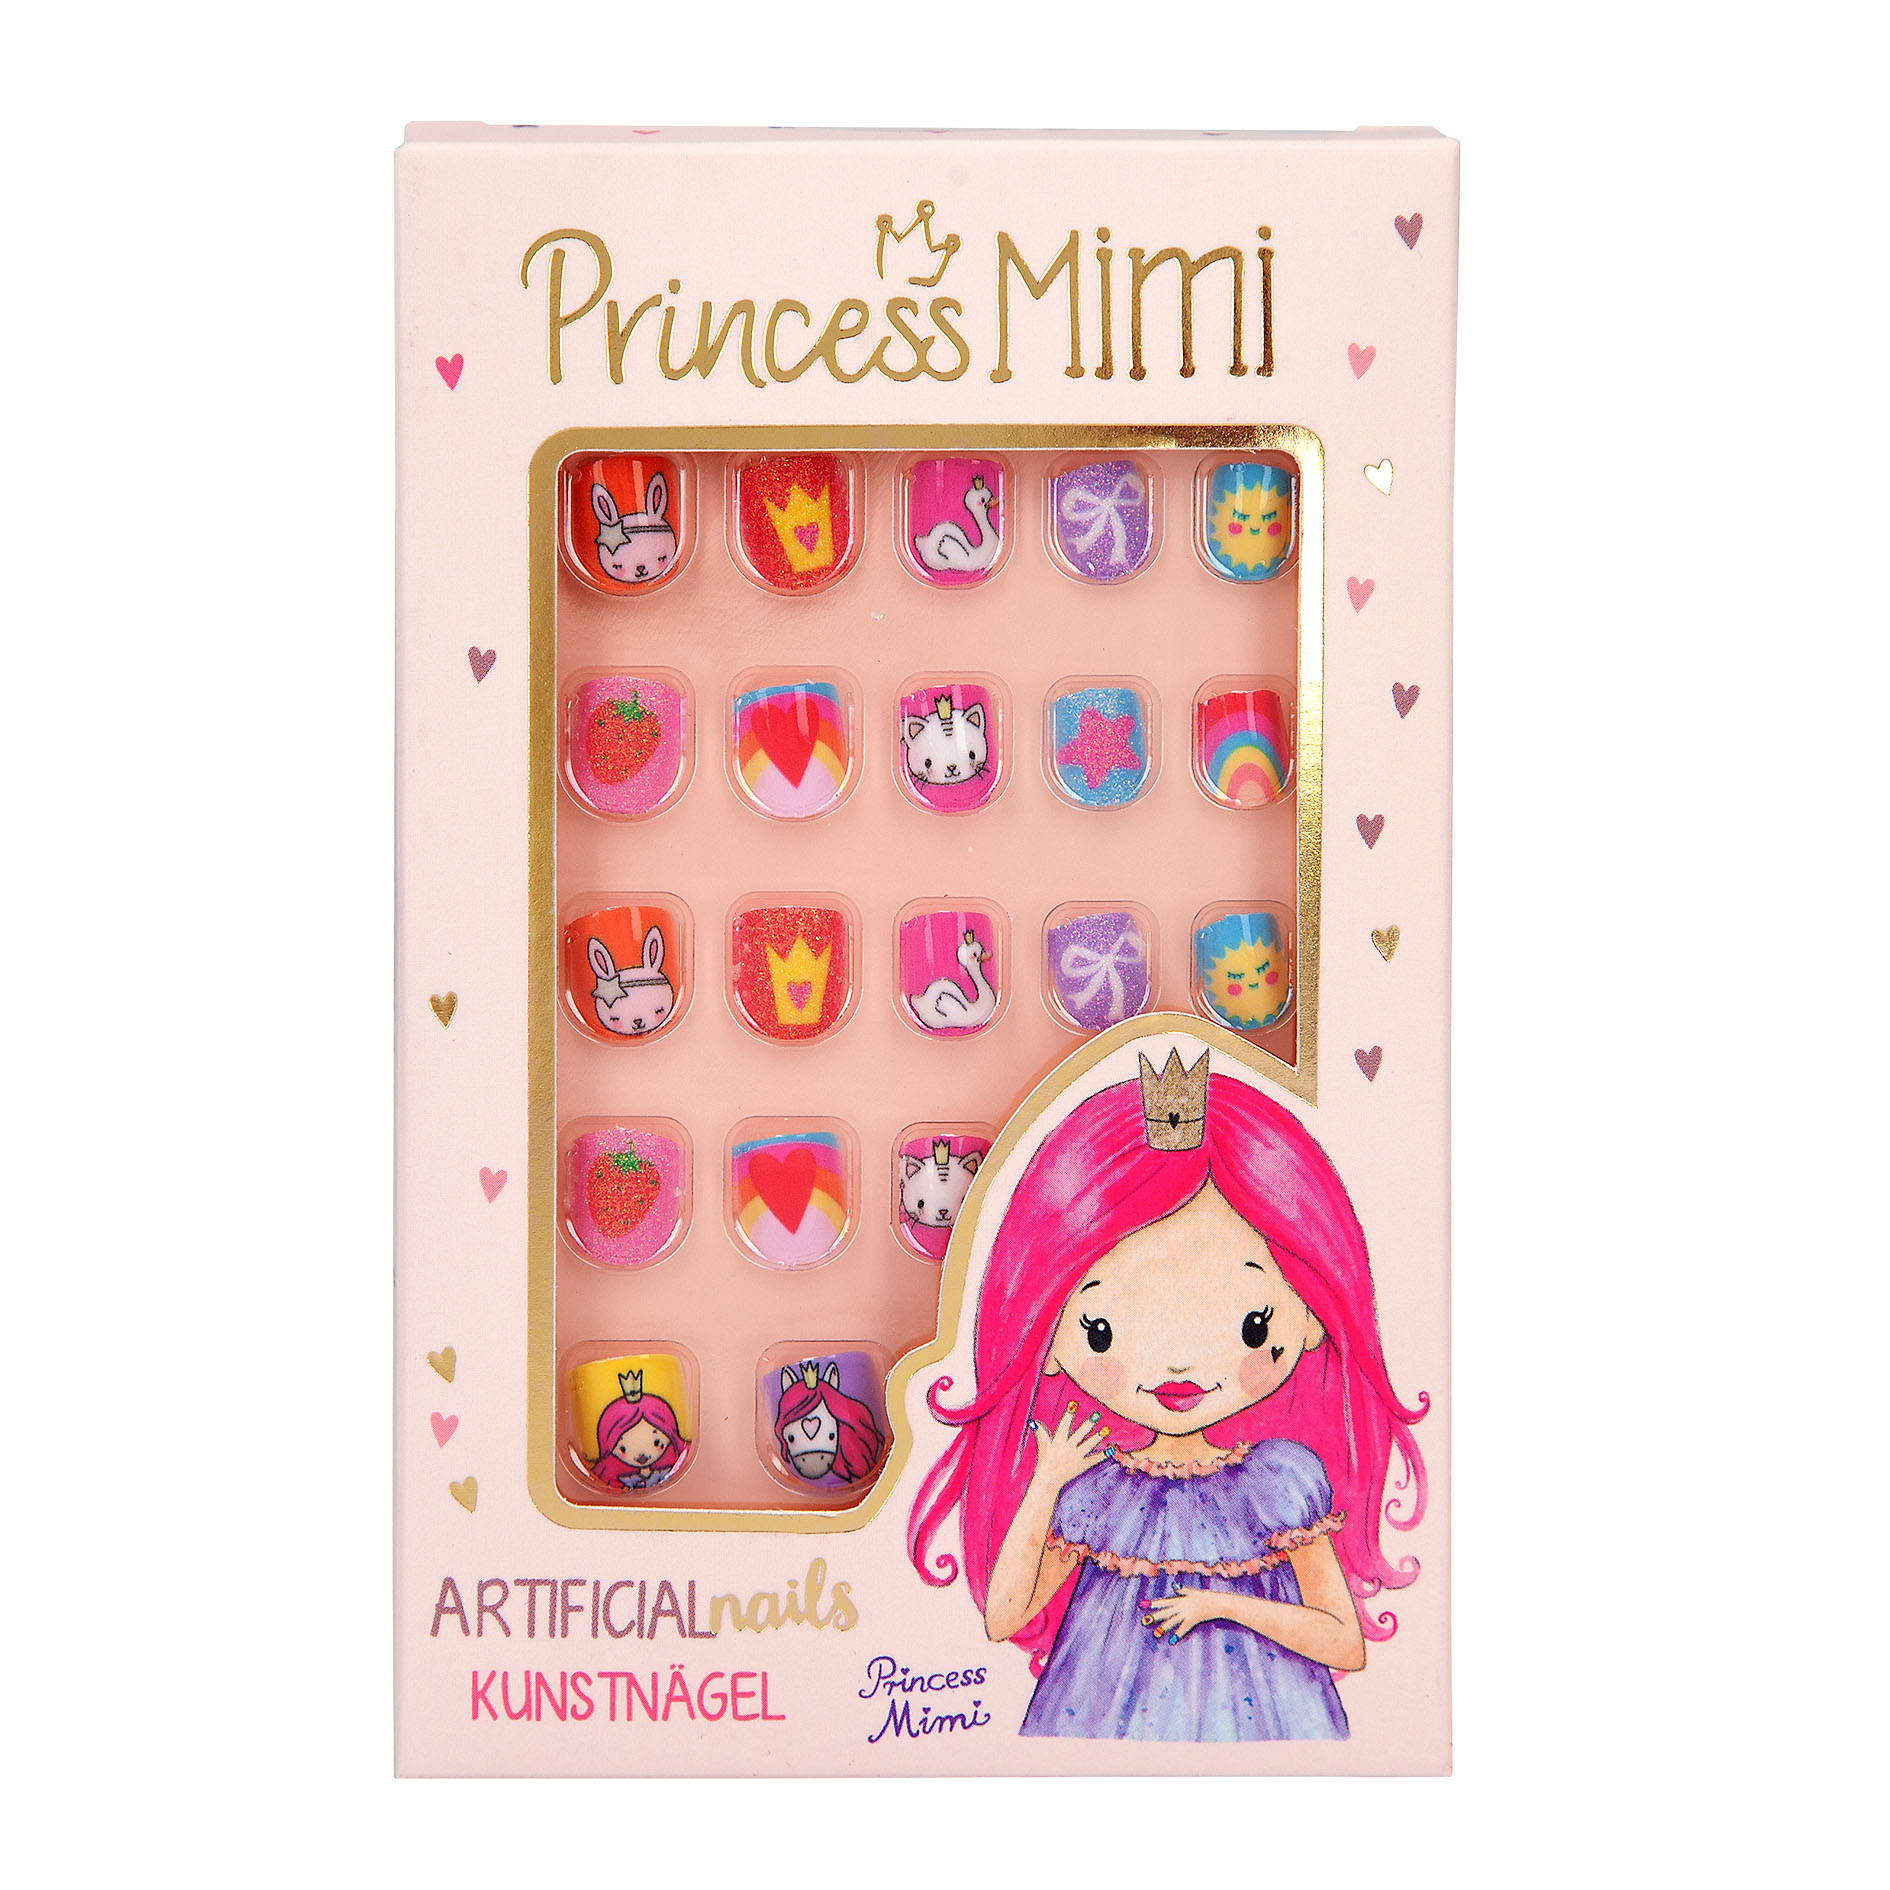 Princess Mimi umjetni nokti